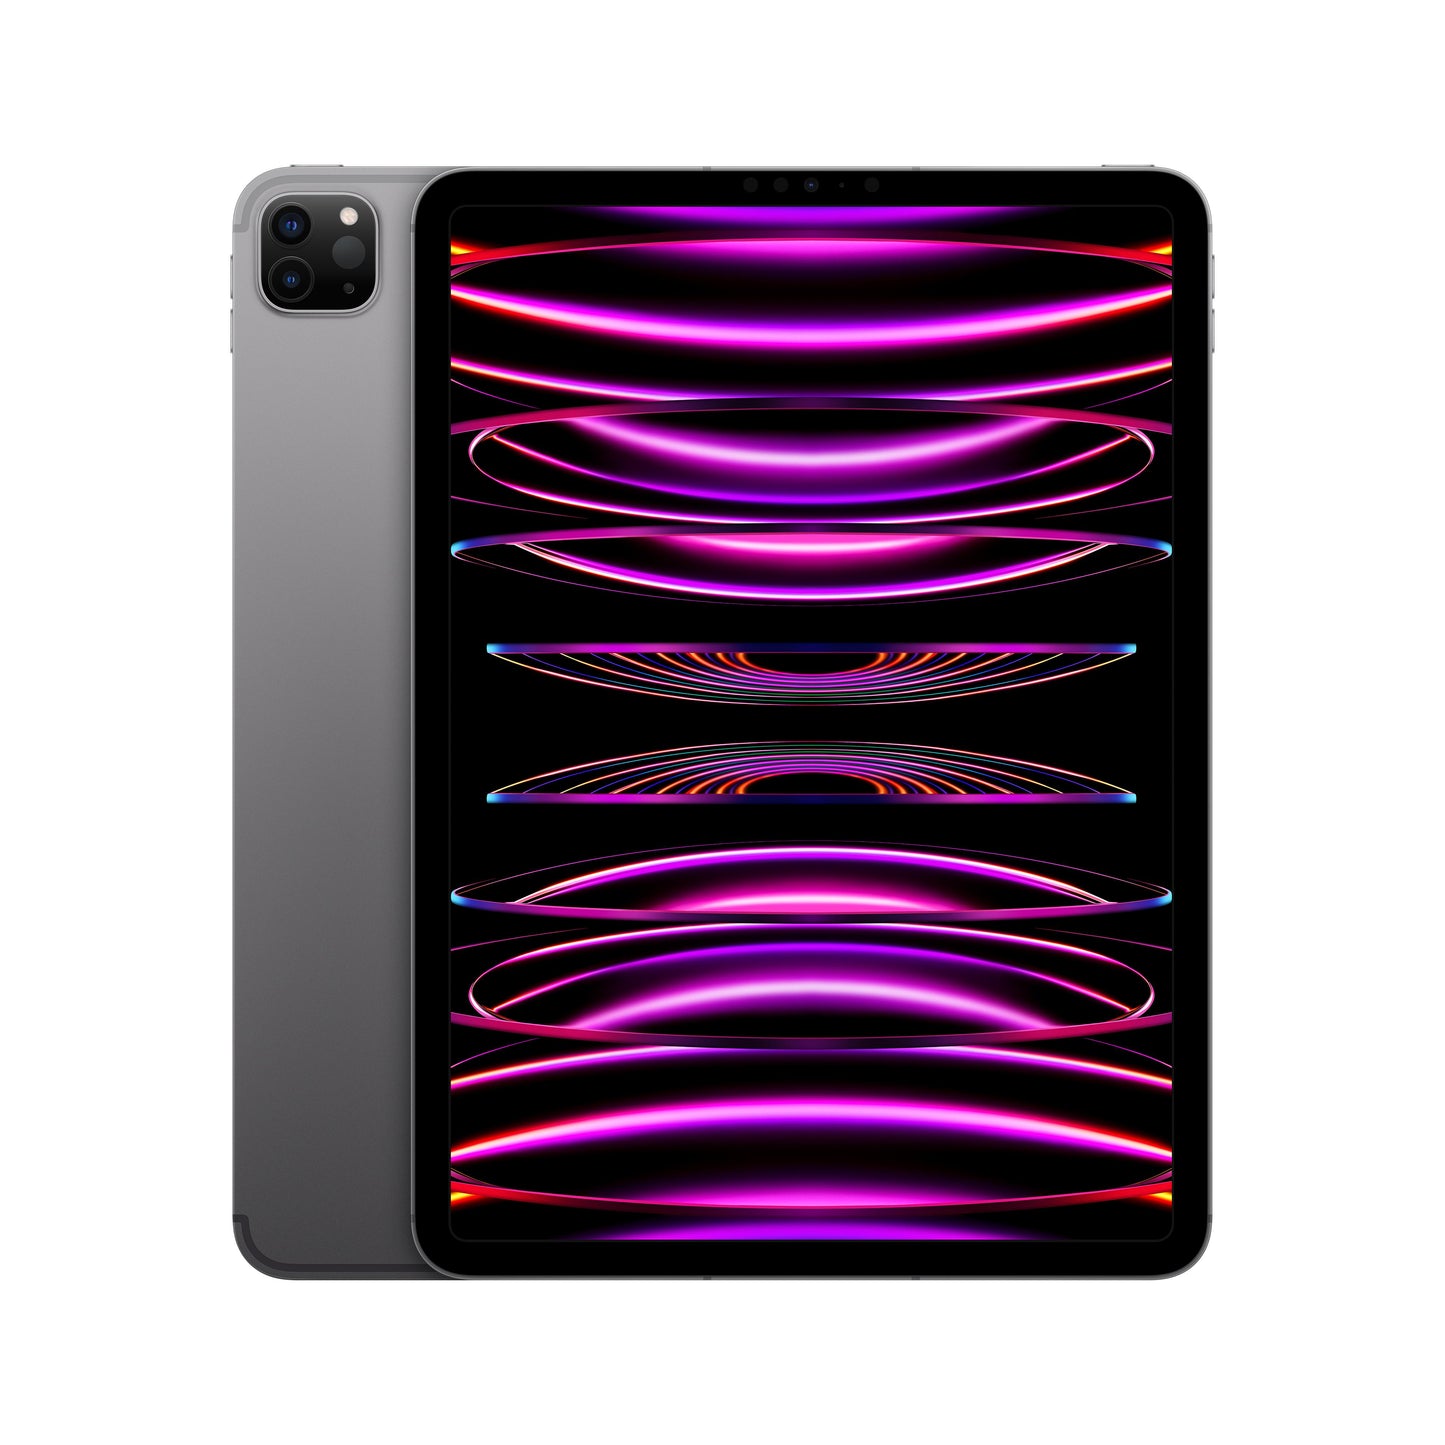 11-inch iPad Pro (4th Gen) Wi-Fi + Cellular 256GB - Space Grey